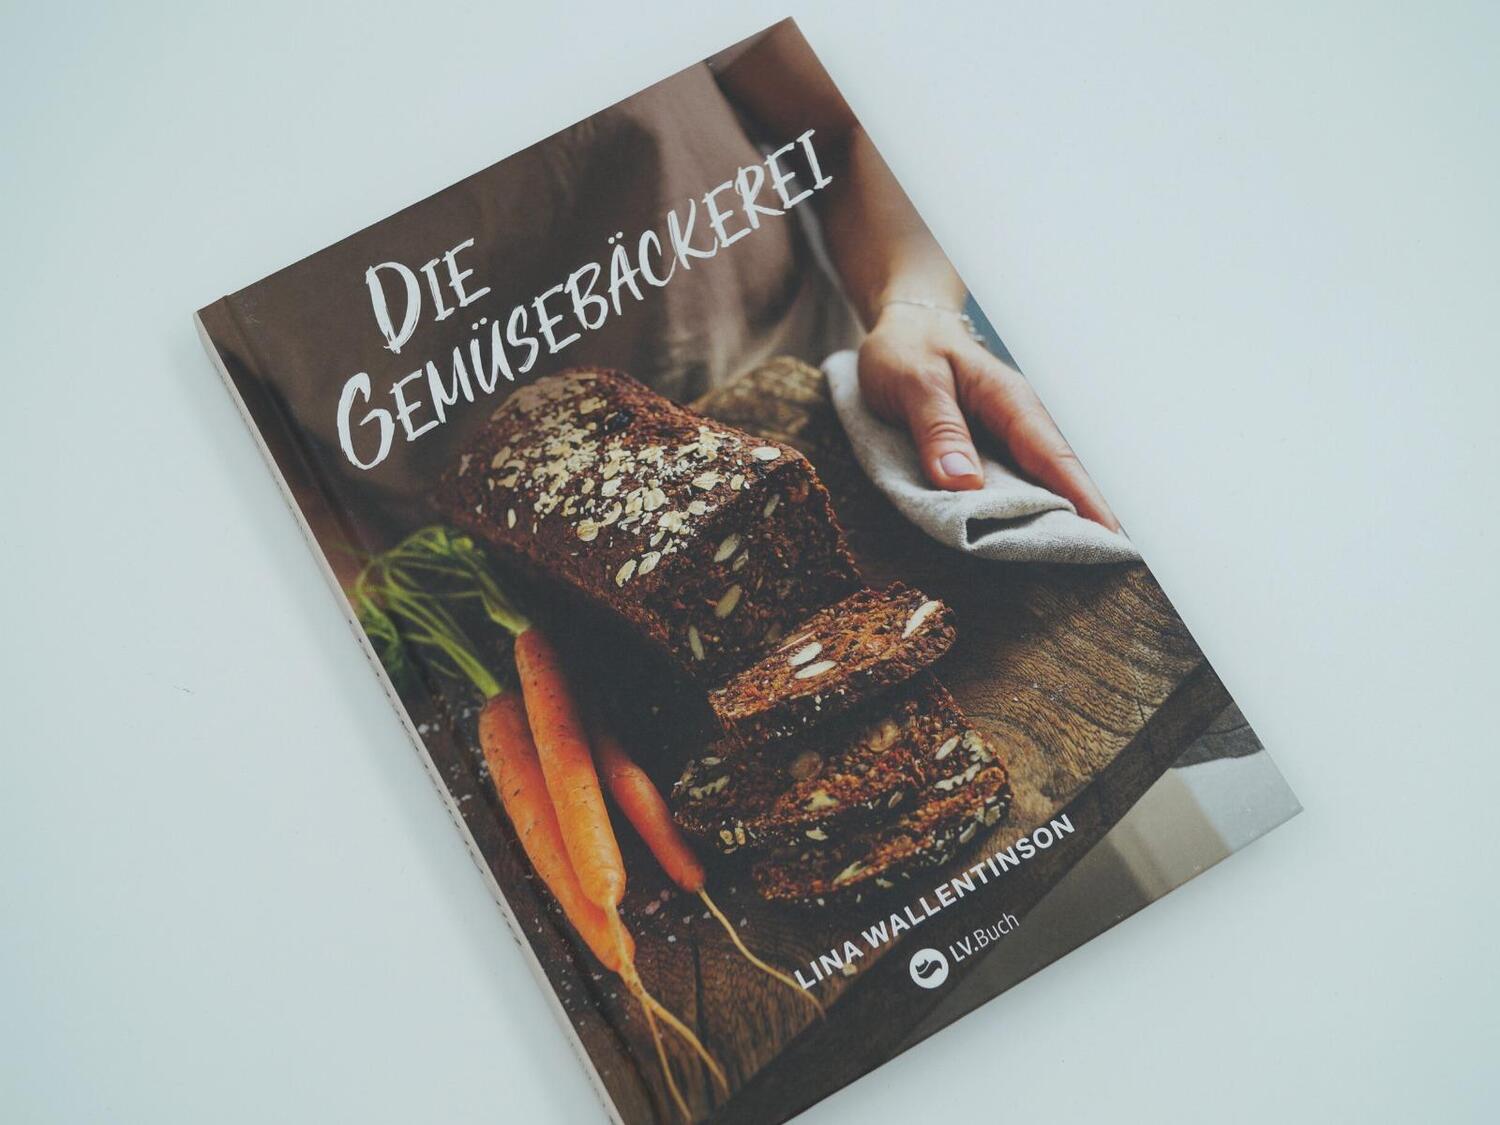 Bild: 9783784357102 | Die Gemüsebäckerei | Lina Wallentinson | Buch | Deutsch | 2022